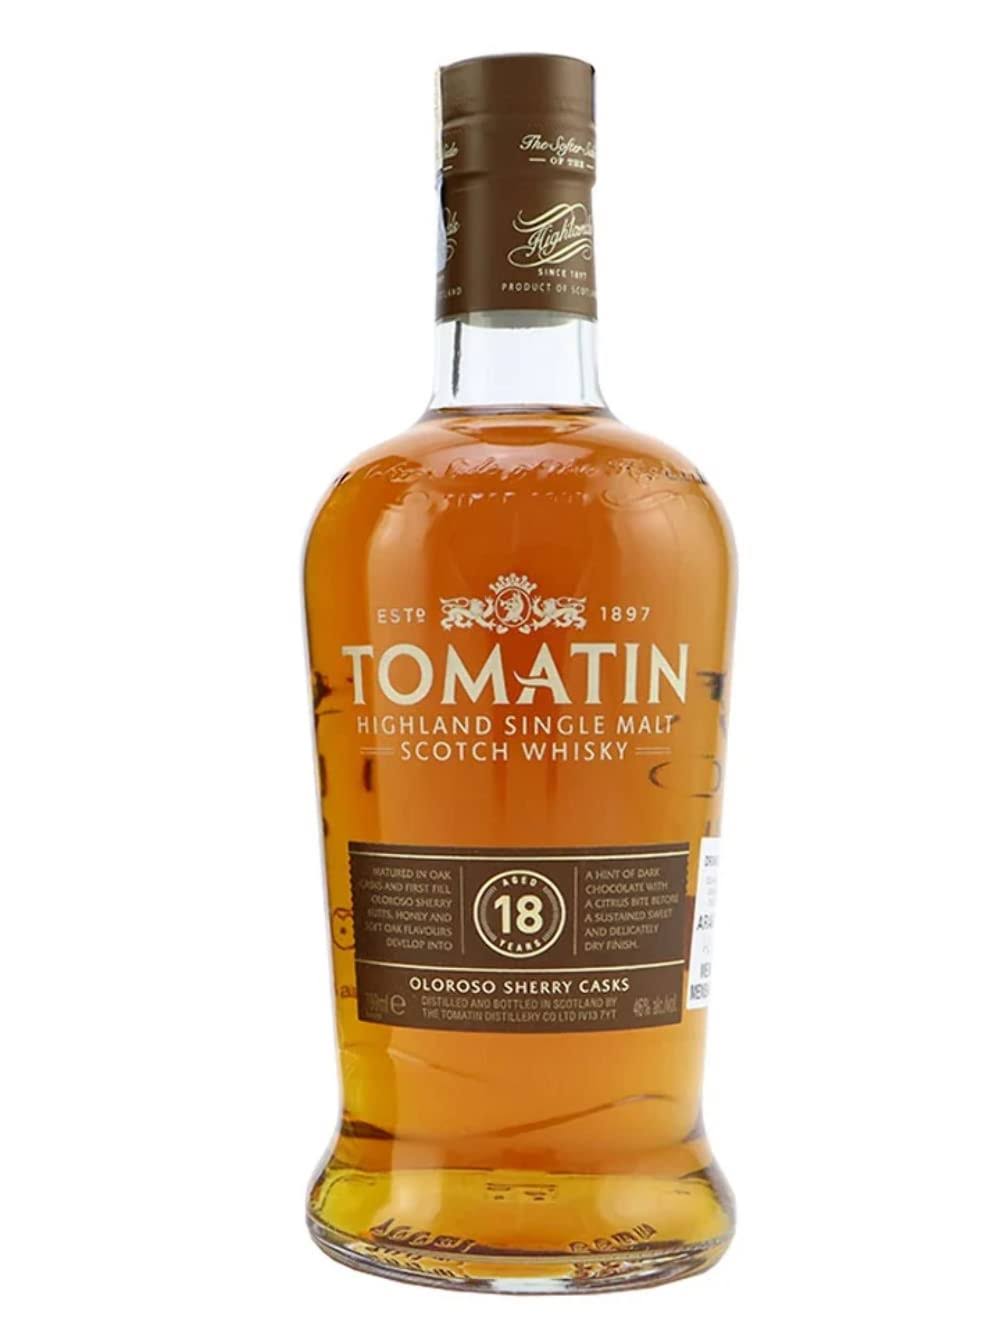 Tomatin Single Malt Scotch Whisky